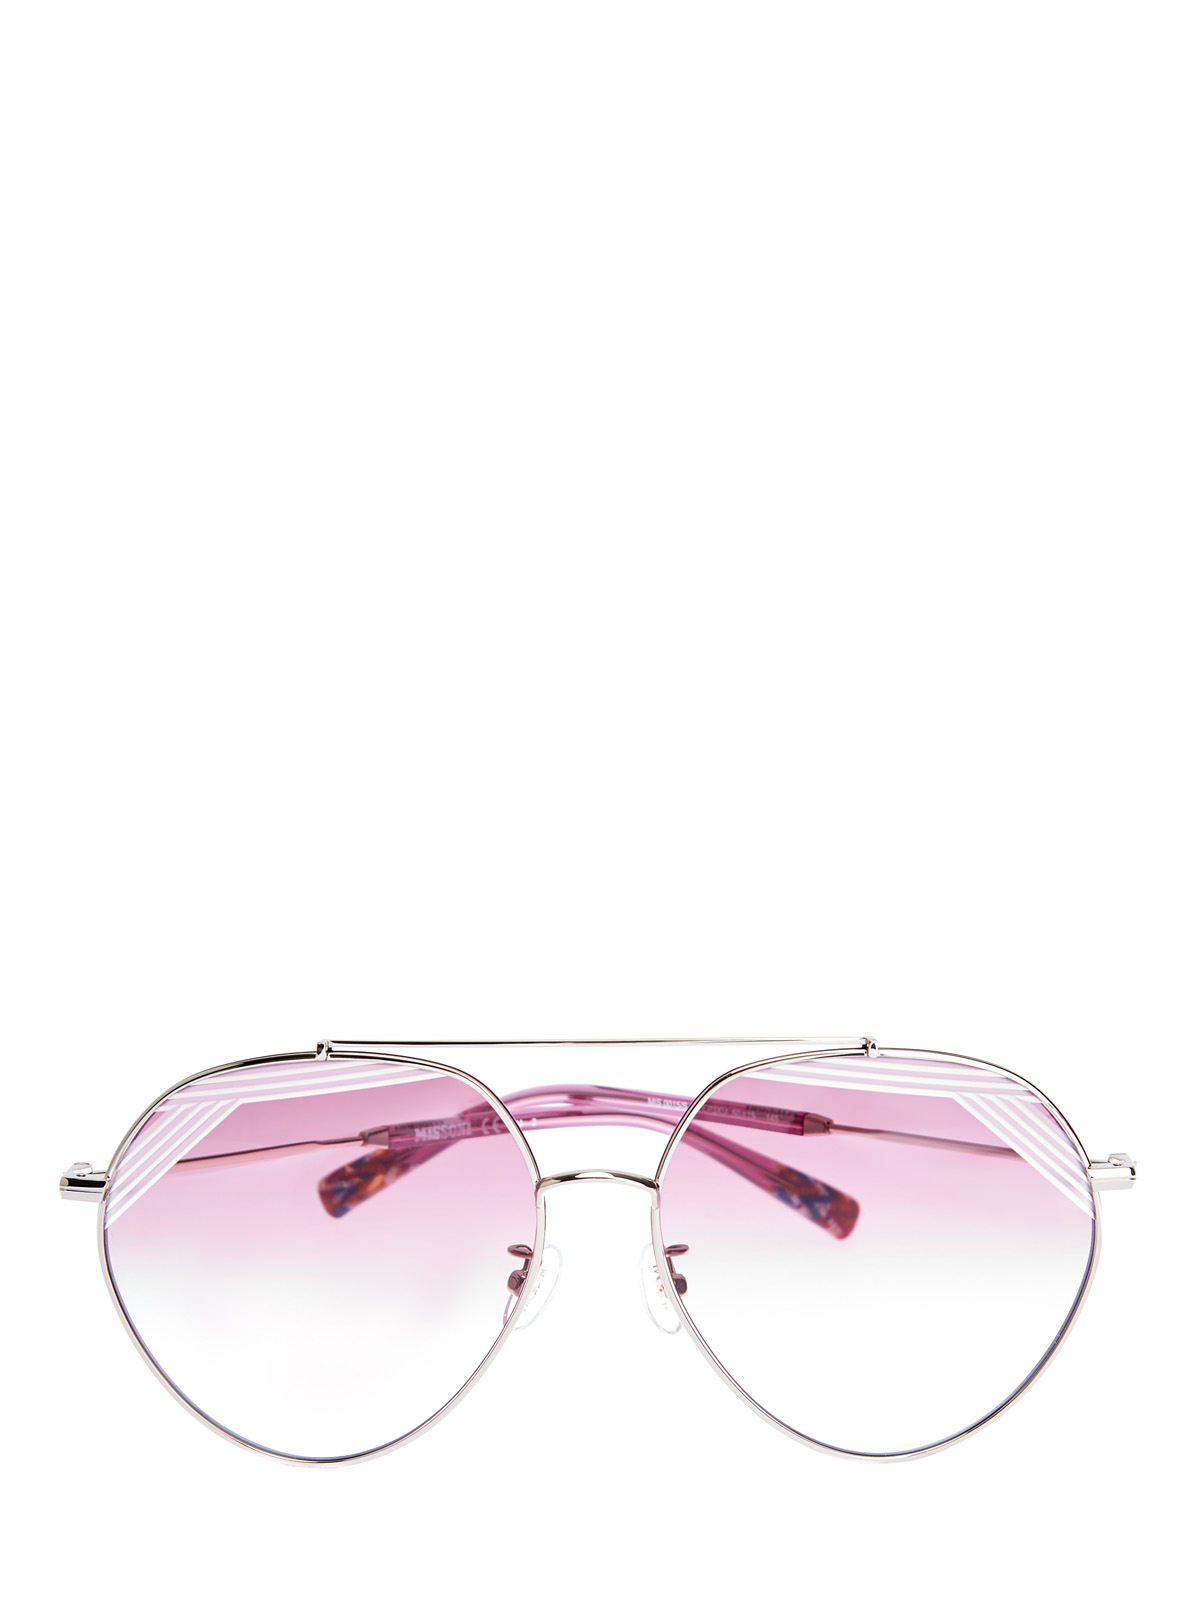 Солнцезащитные очки-oversize в тонкой металлической оправе MISSONI, цвет розовый, размер S;M;L